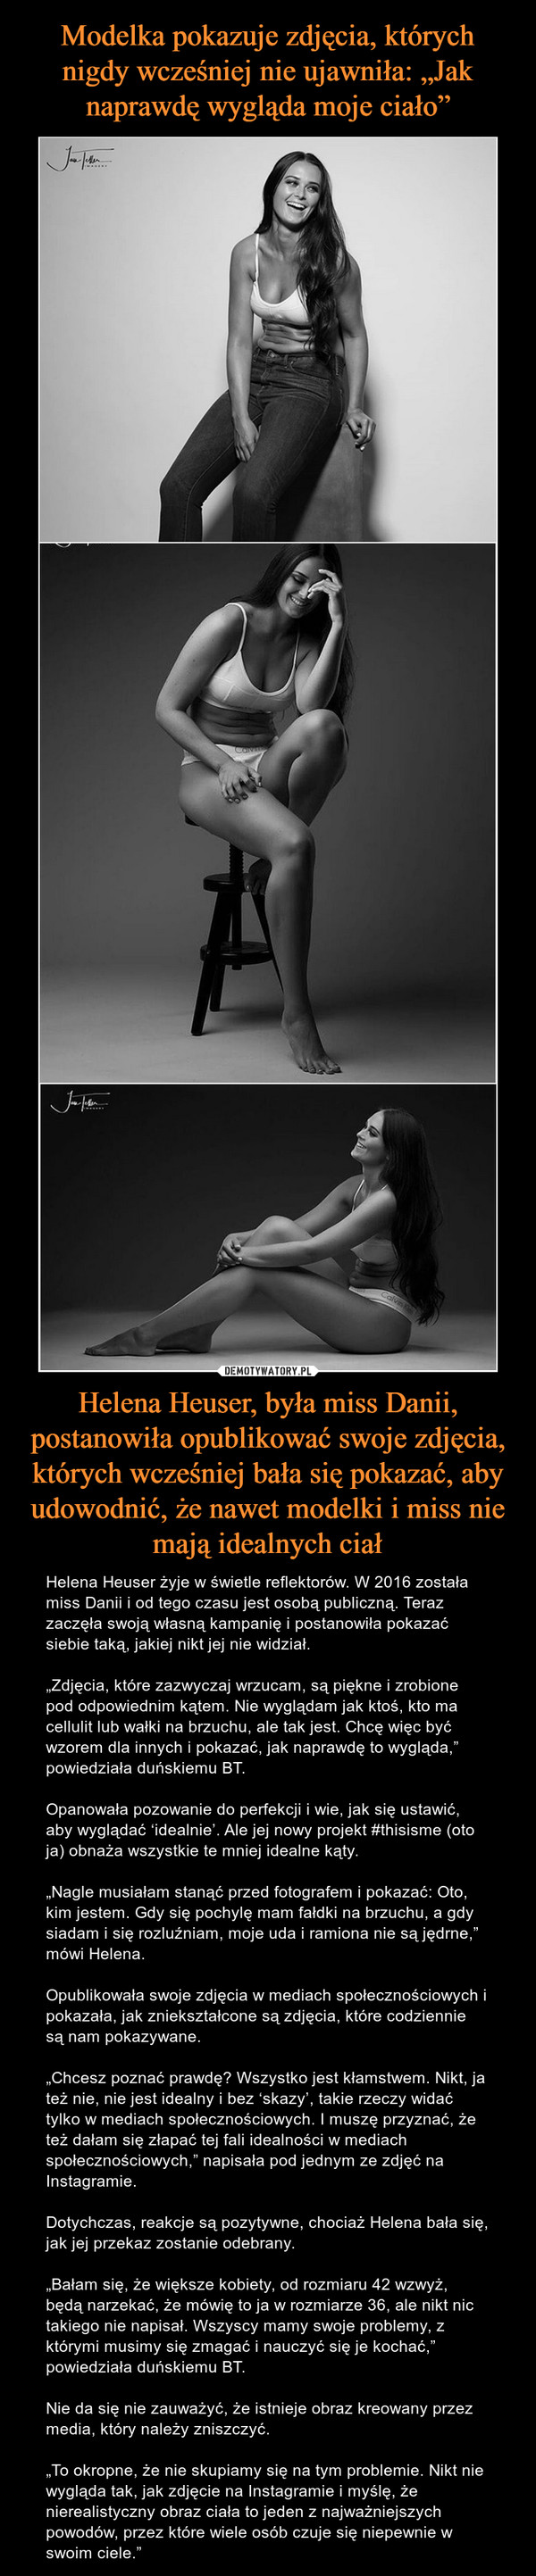 Modelka pokazuje zdjęcia, których nigdy wcześniej nie ujawniła: „Jak naprawdę wygląda moje ciało” Helena Heuser, była miss Danii, postanowiła opublikować swoje zdjęcia, których wcześniej bała się pokazać, aby udowodnić, że nawet modelki i miss nie mają idealnych ciał